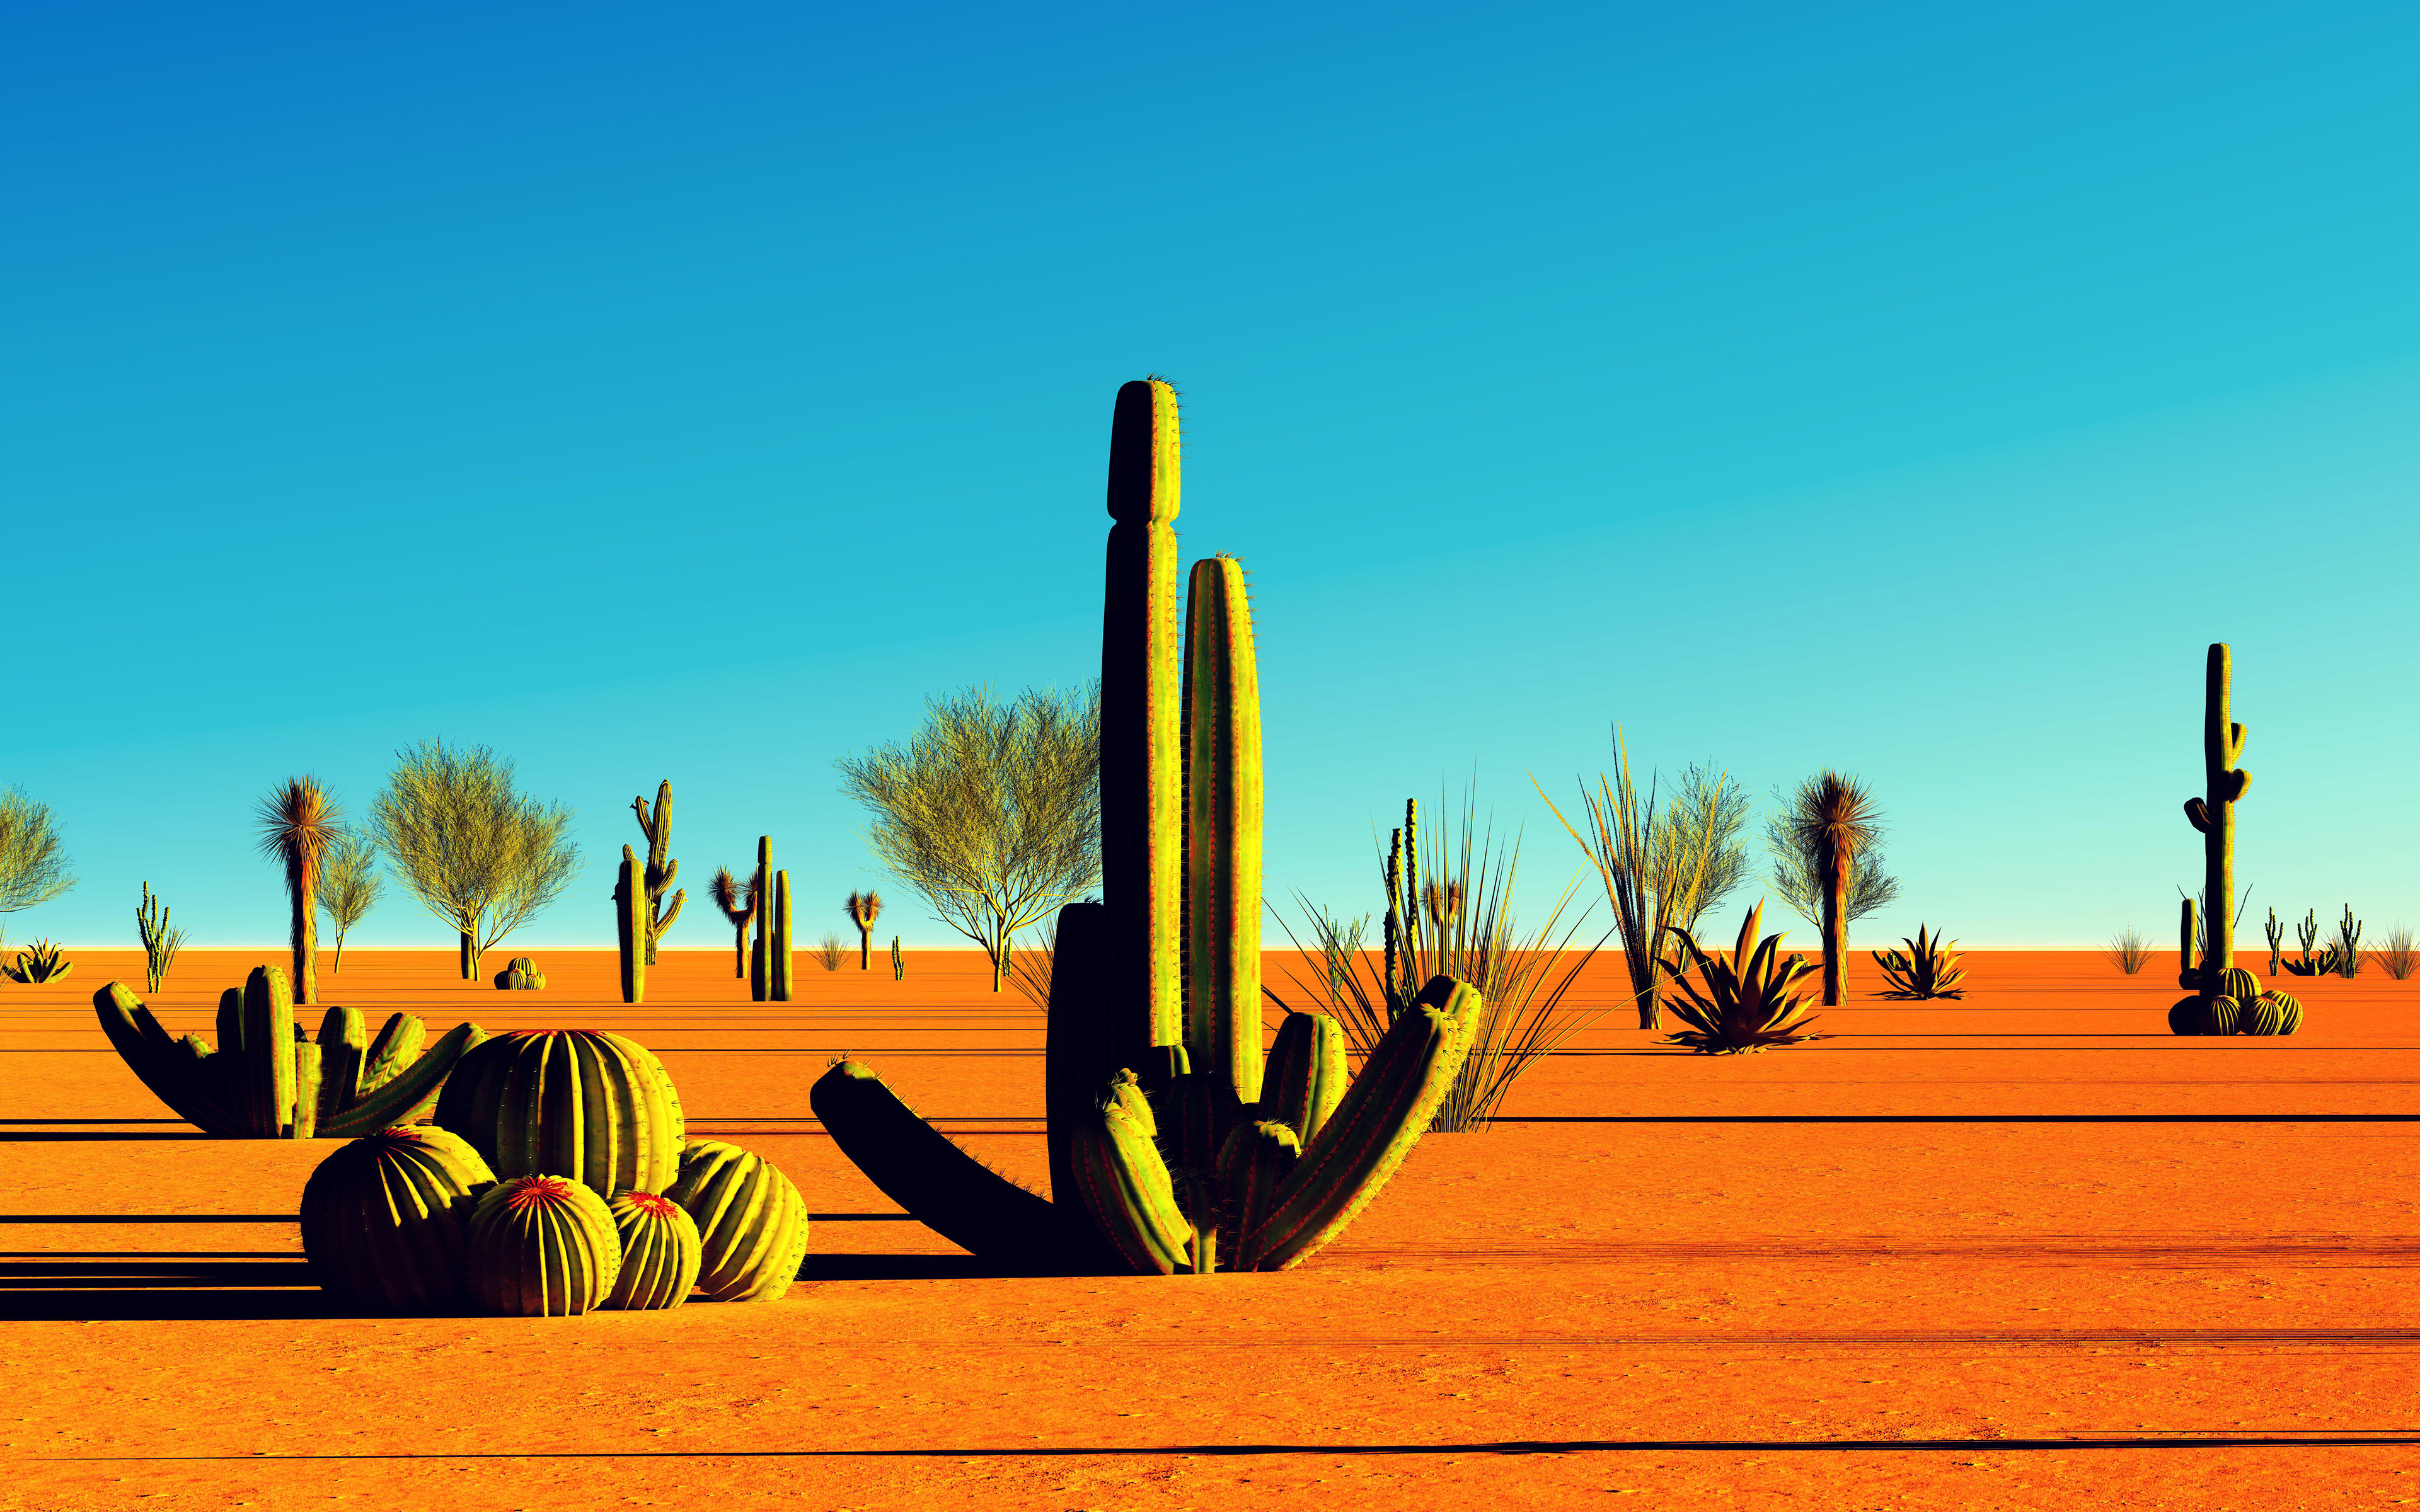 Descarga gratuita de fondo de pantalla para móvil de Paisaje, Cactus, Arena, Desierto, California, Tierra/naturaleza.